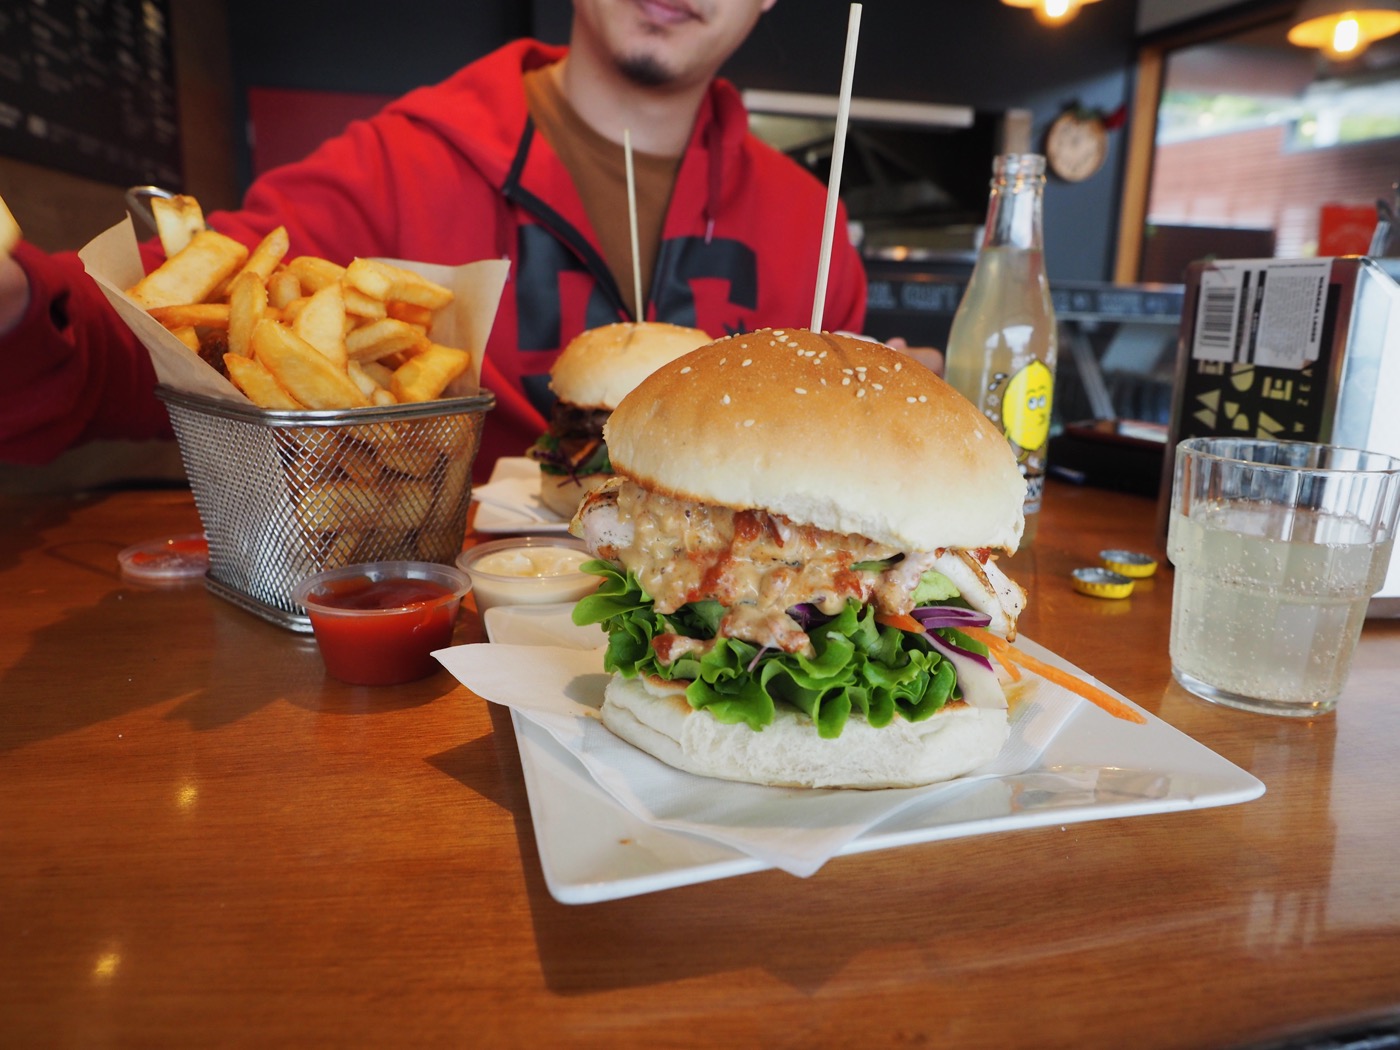 紐西蘭南島美食 Lake Wanaka 瓦納卡 超大份量美味漢堡 Red Star Burger Bar - 一口冒險 Bitesized Adventure